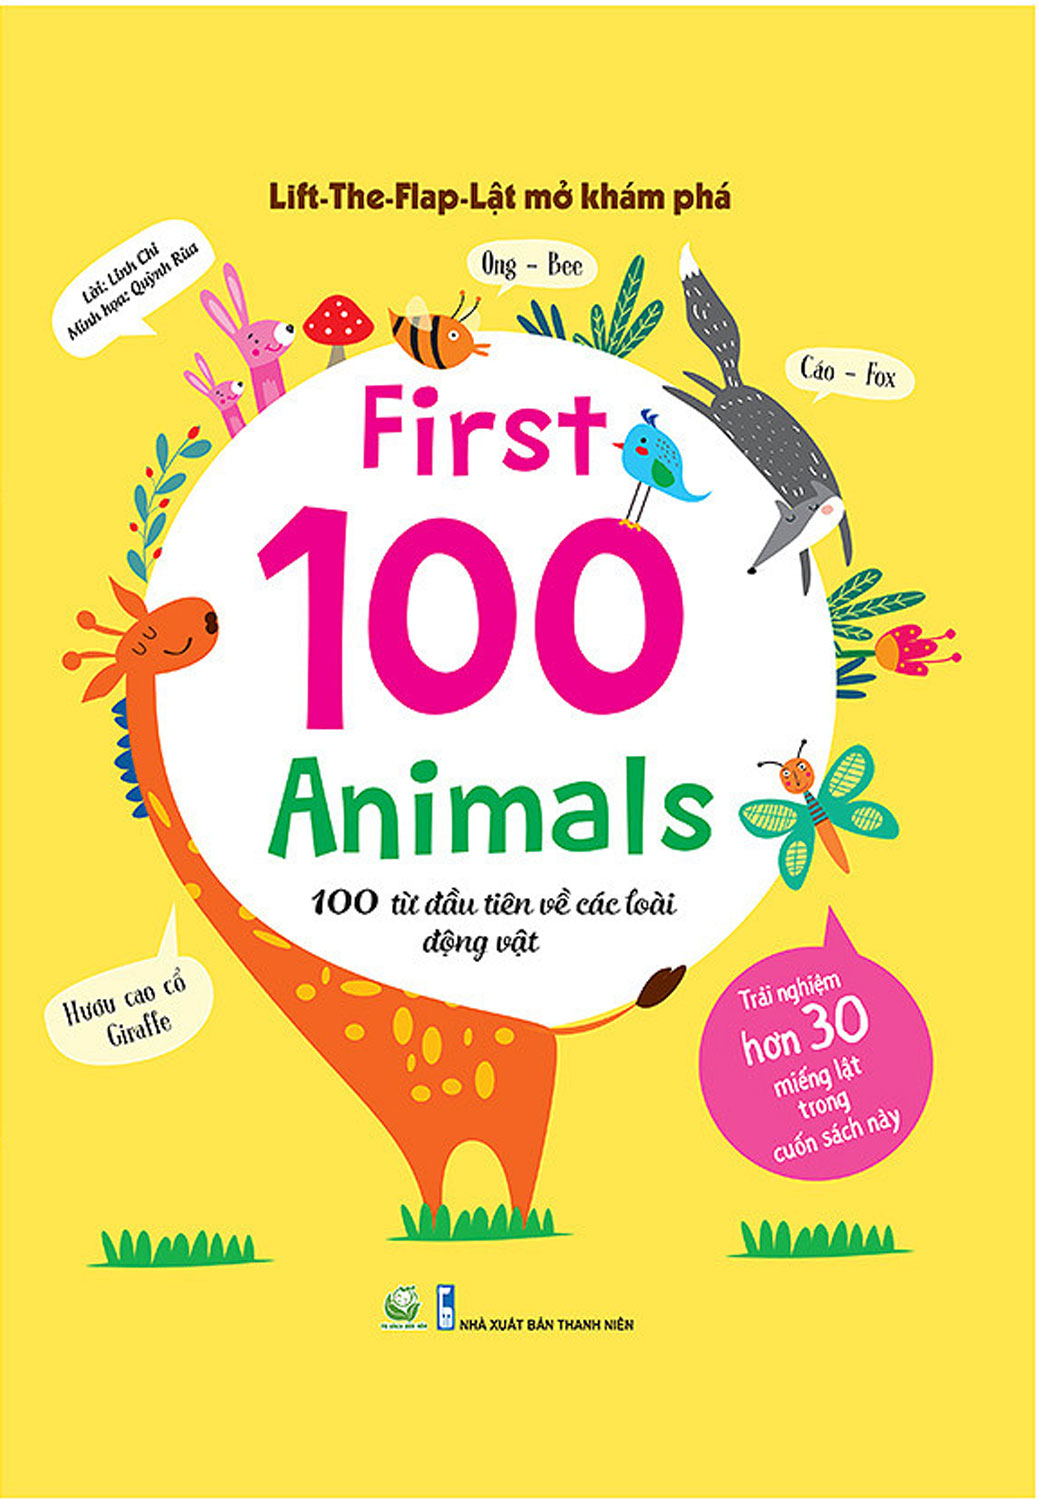 Lift-The-Flap - Lật Mở Khám Phá - First 100 Animals - 100 Từ Đầu Tiên Về Các Loài Động Vật 